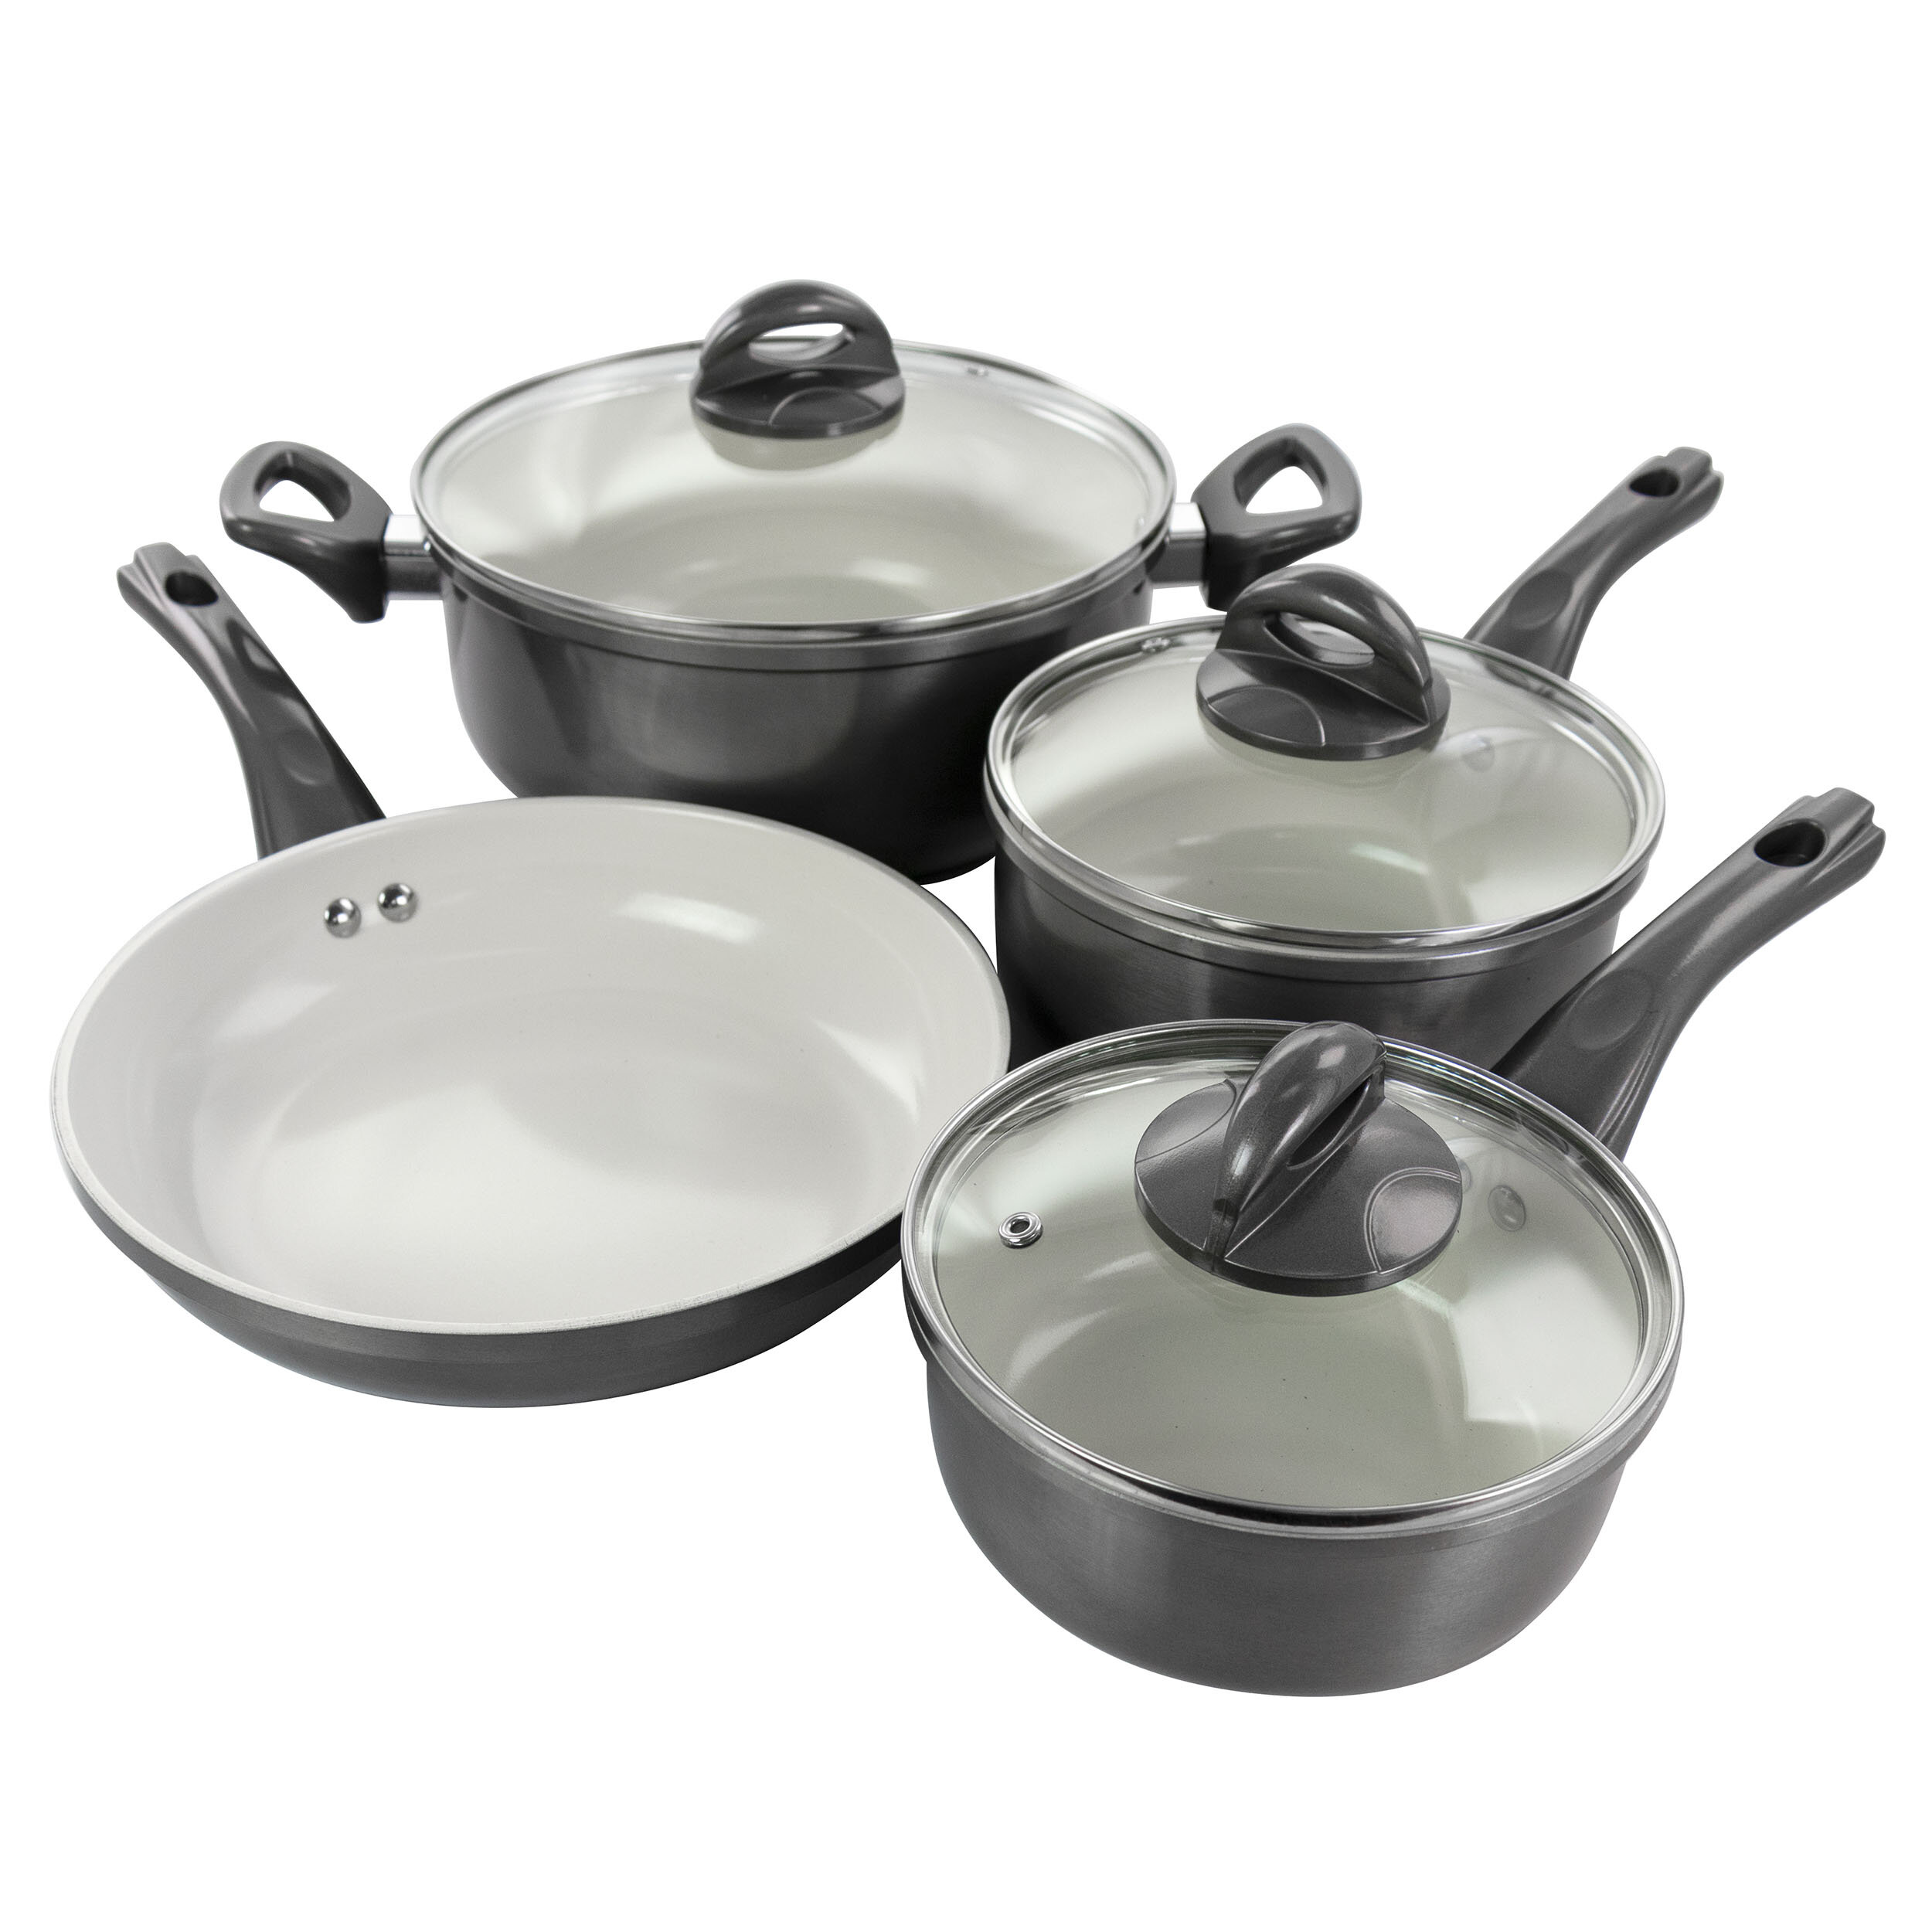 https://assets.wfcdn.com/im/28403791/compr-r85/1269/126966113/7-piece-non-stick-aluminum-cookware-set.jpg